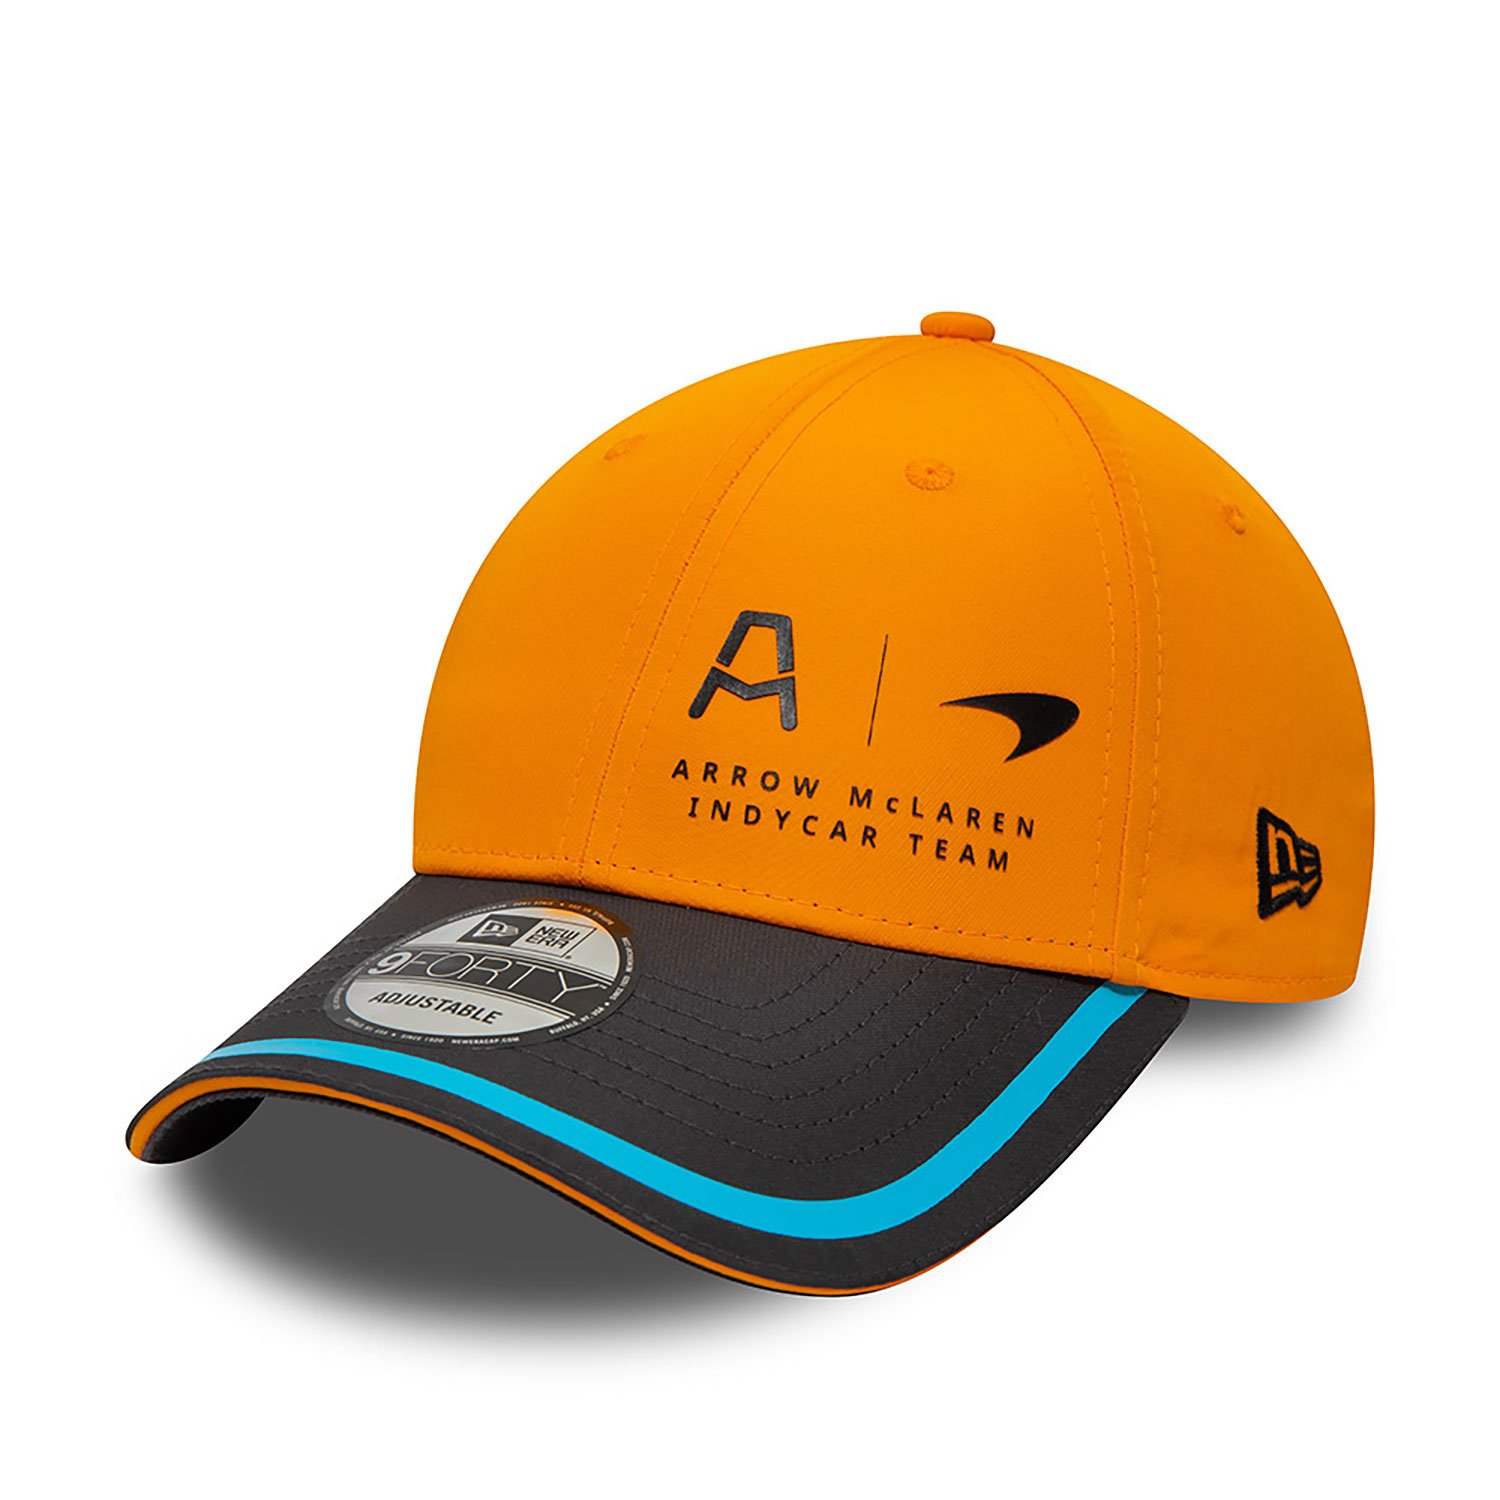 McLaren Racing Indycar Team Orange 9FORTY Adjustable Cap